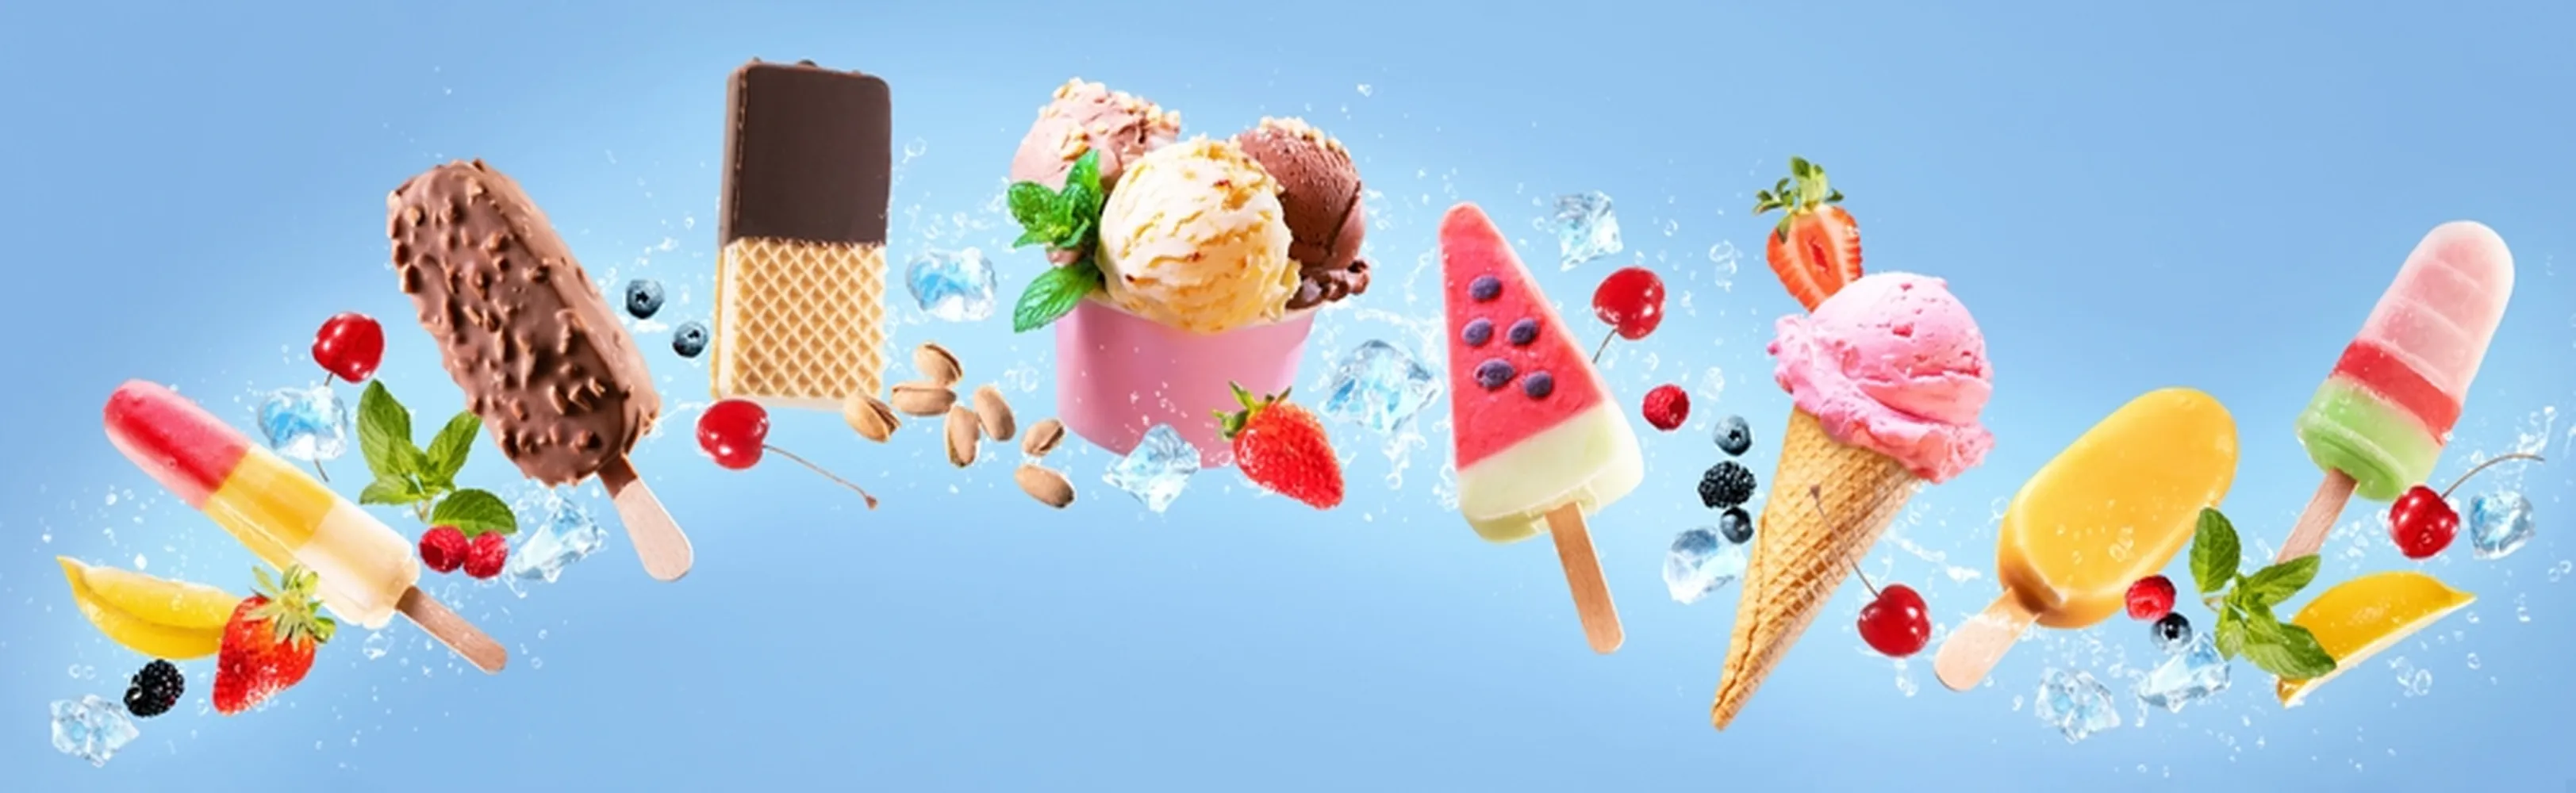 کاغذ دیواری سه بعدی آب میوه و بستنی فروشی طرح کلکسیون انواع بستنی